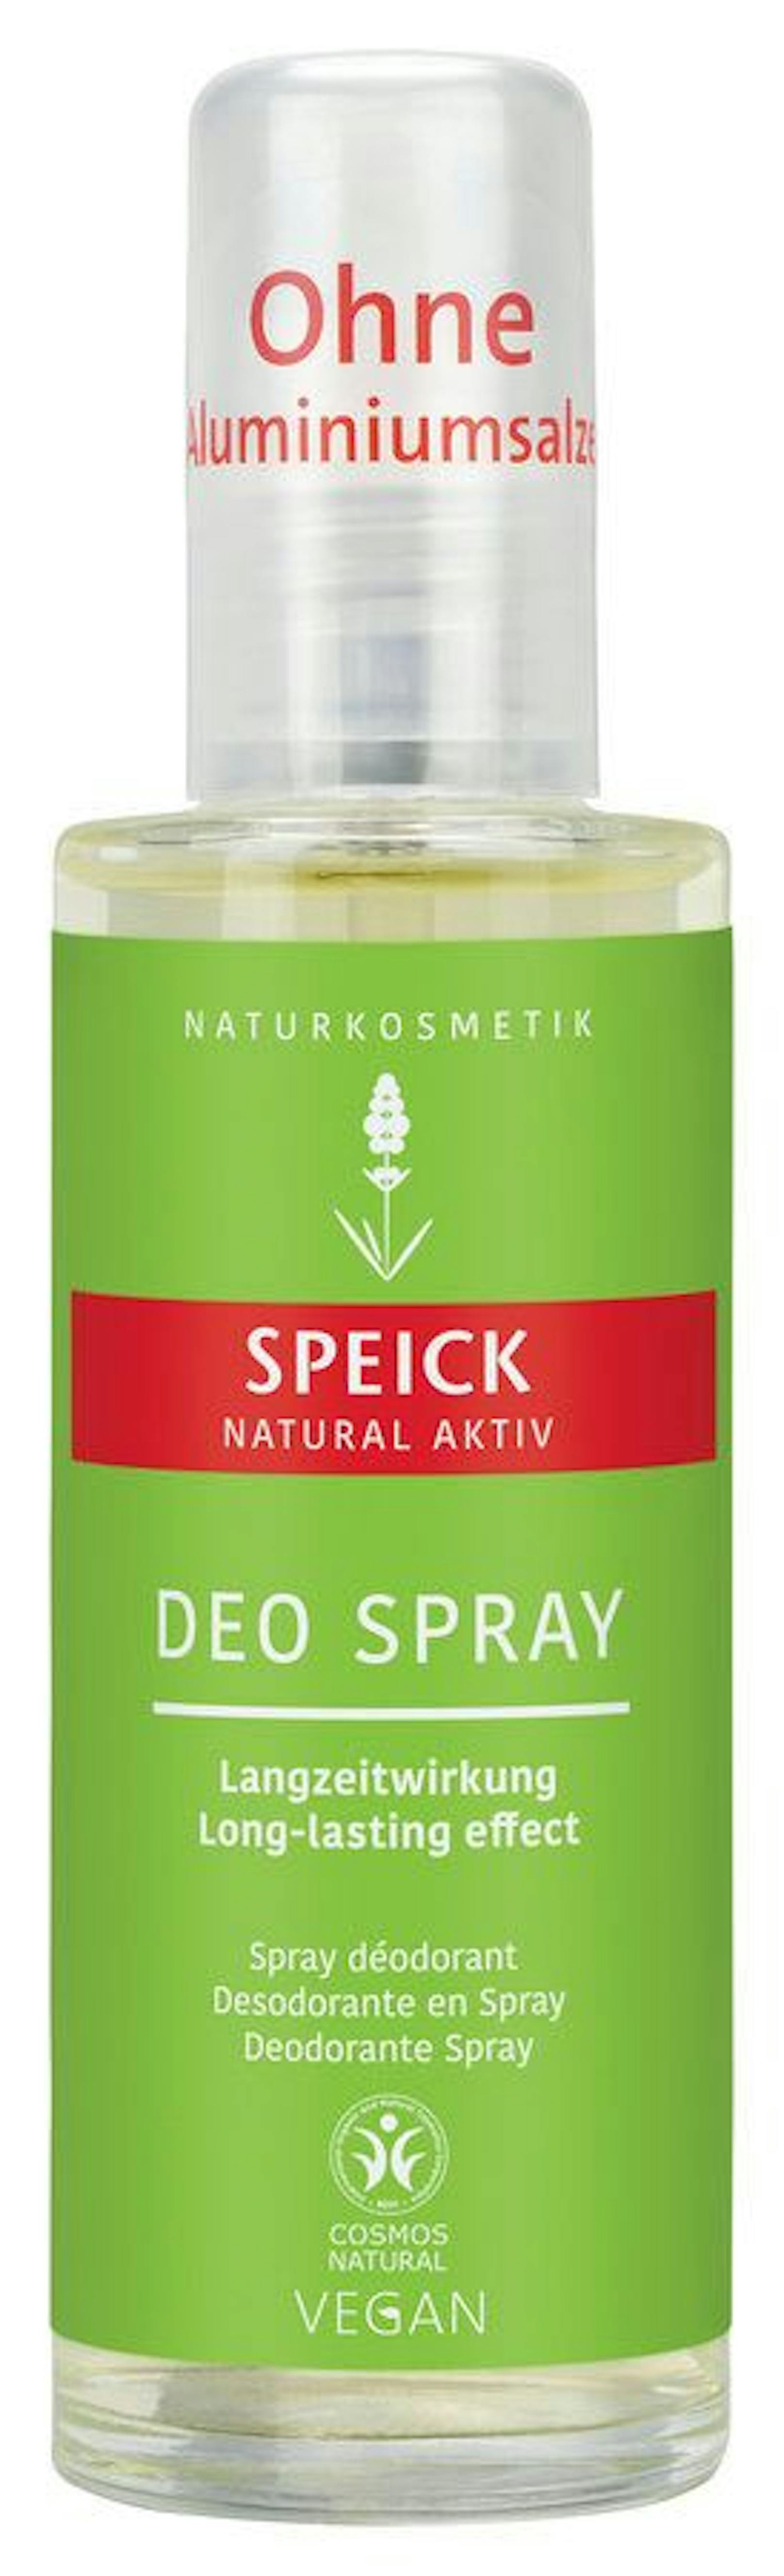 Das Naturkosmetikum Speick Natural Aktiv Deo Spray wurde als "nicht zufriedenstellend" bewertet. Es erreichte nur 10 von 100 Punkten.